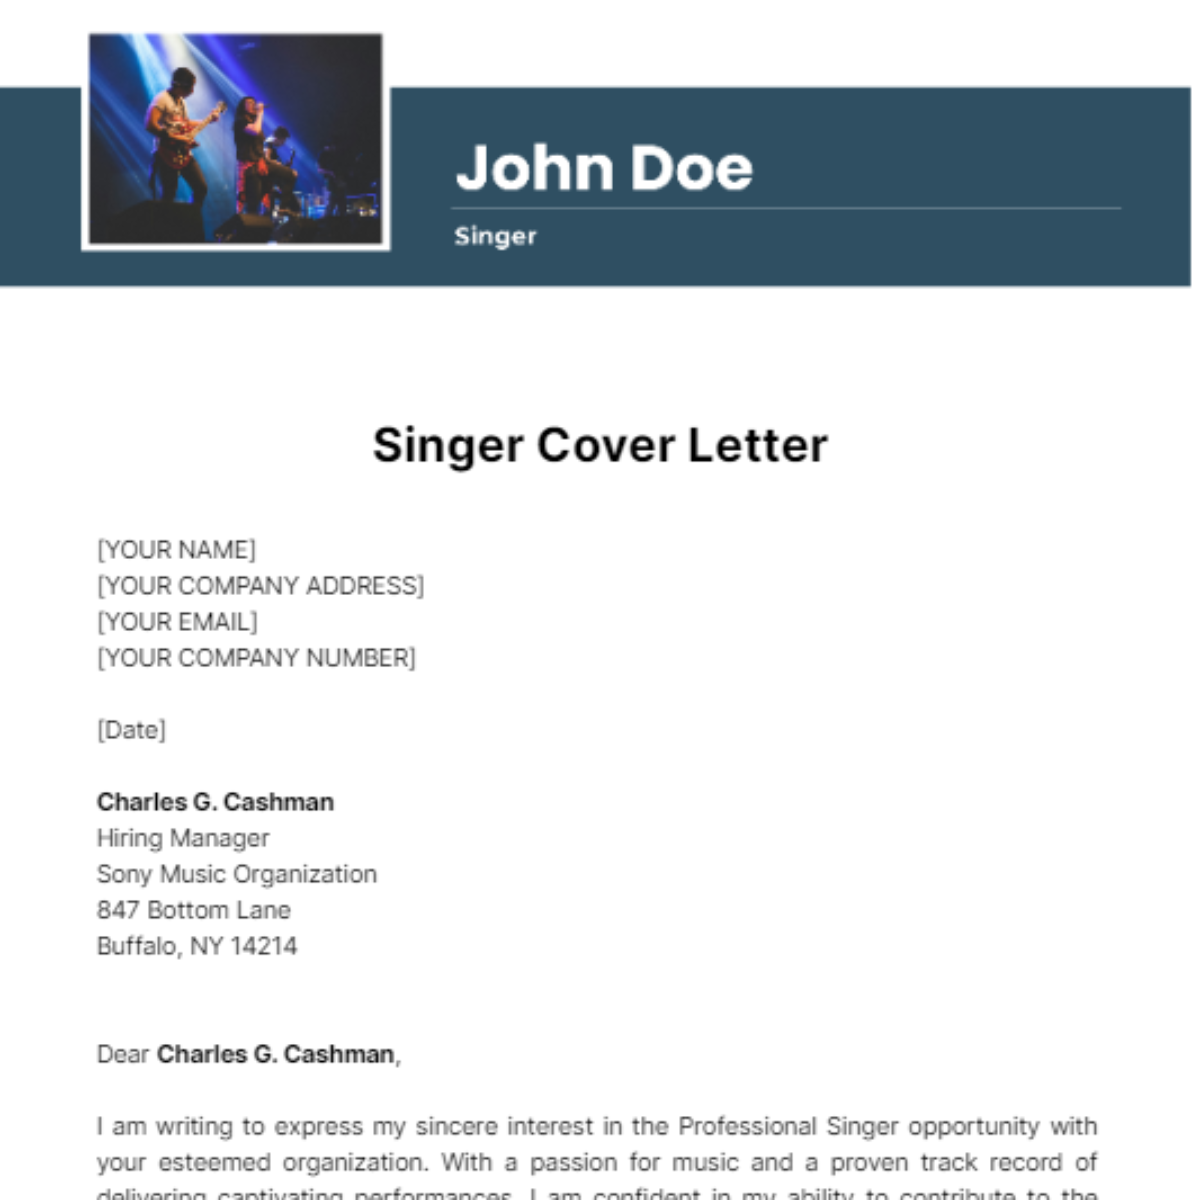 Singer Cover Letter Template